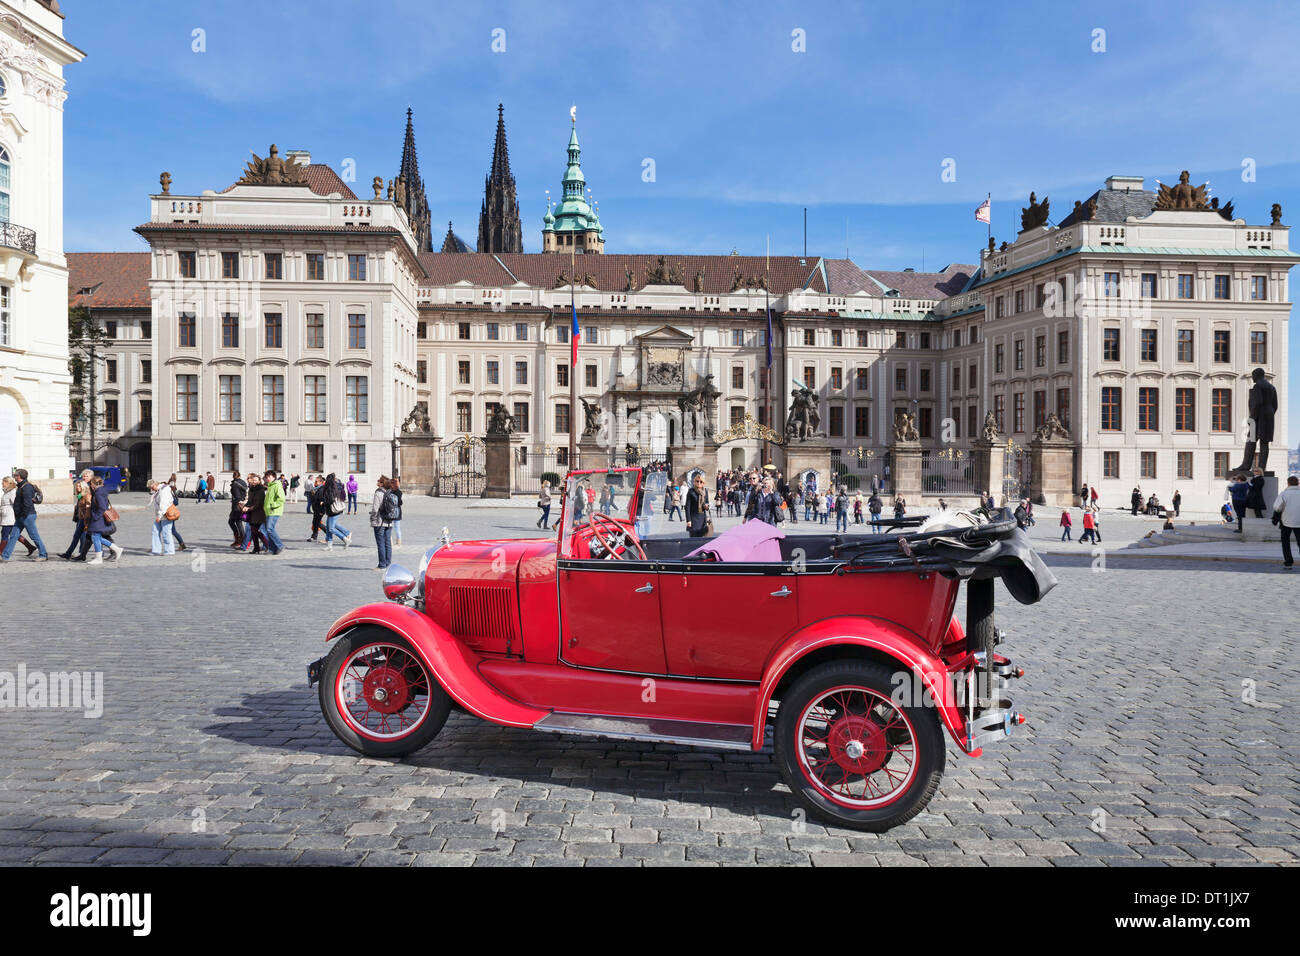 Roten Oldtimer Sightseeing, Hradschin-Platz, Burg Hradschin und St. Vitus Kathedrale, der UNESCO, Prag, Tschechische Republik Stockfoto